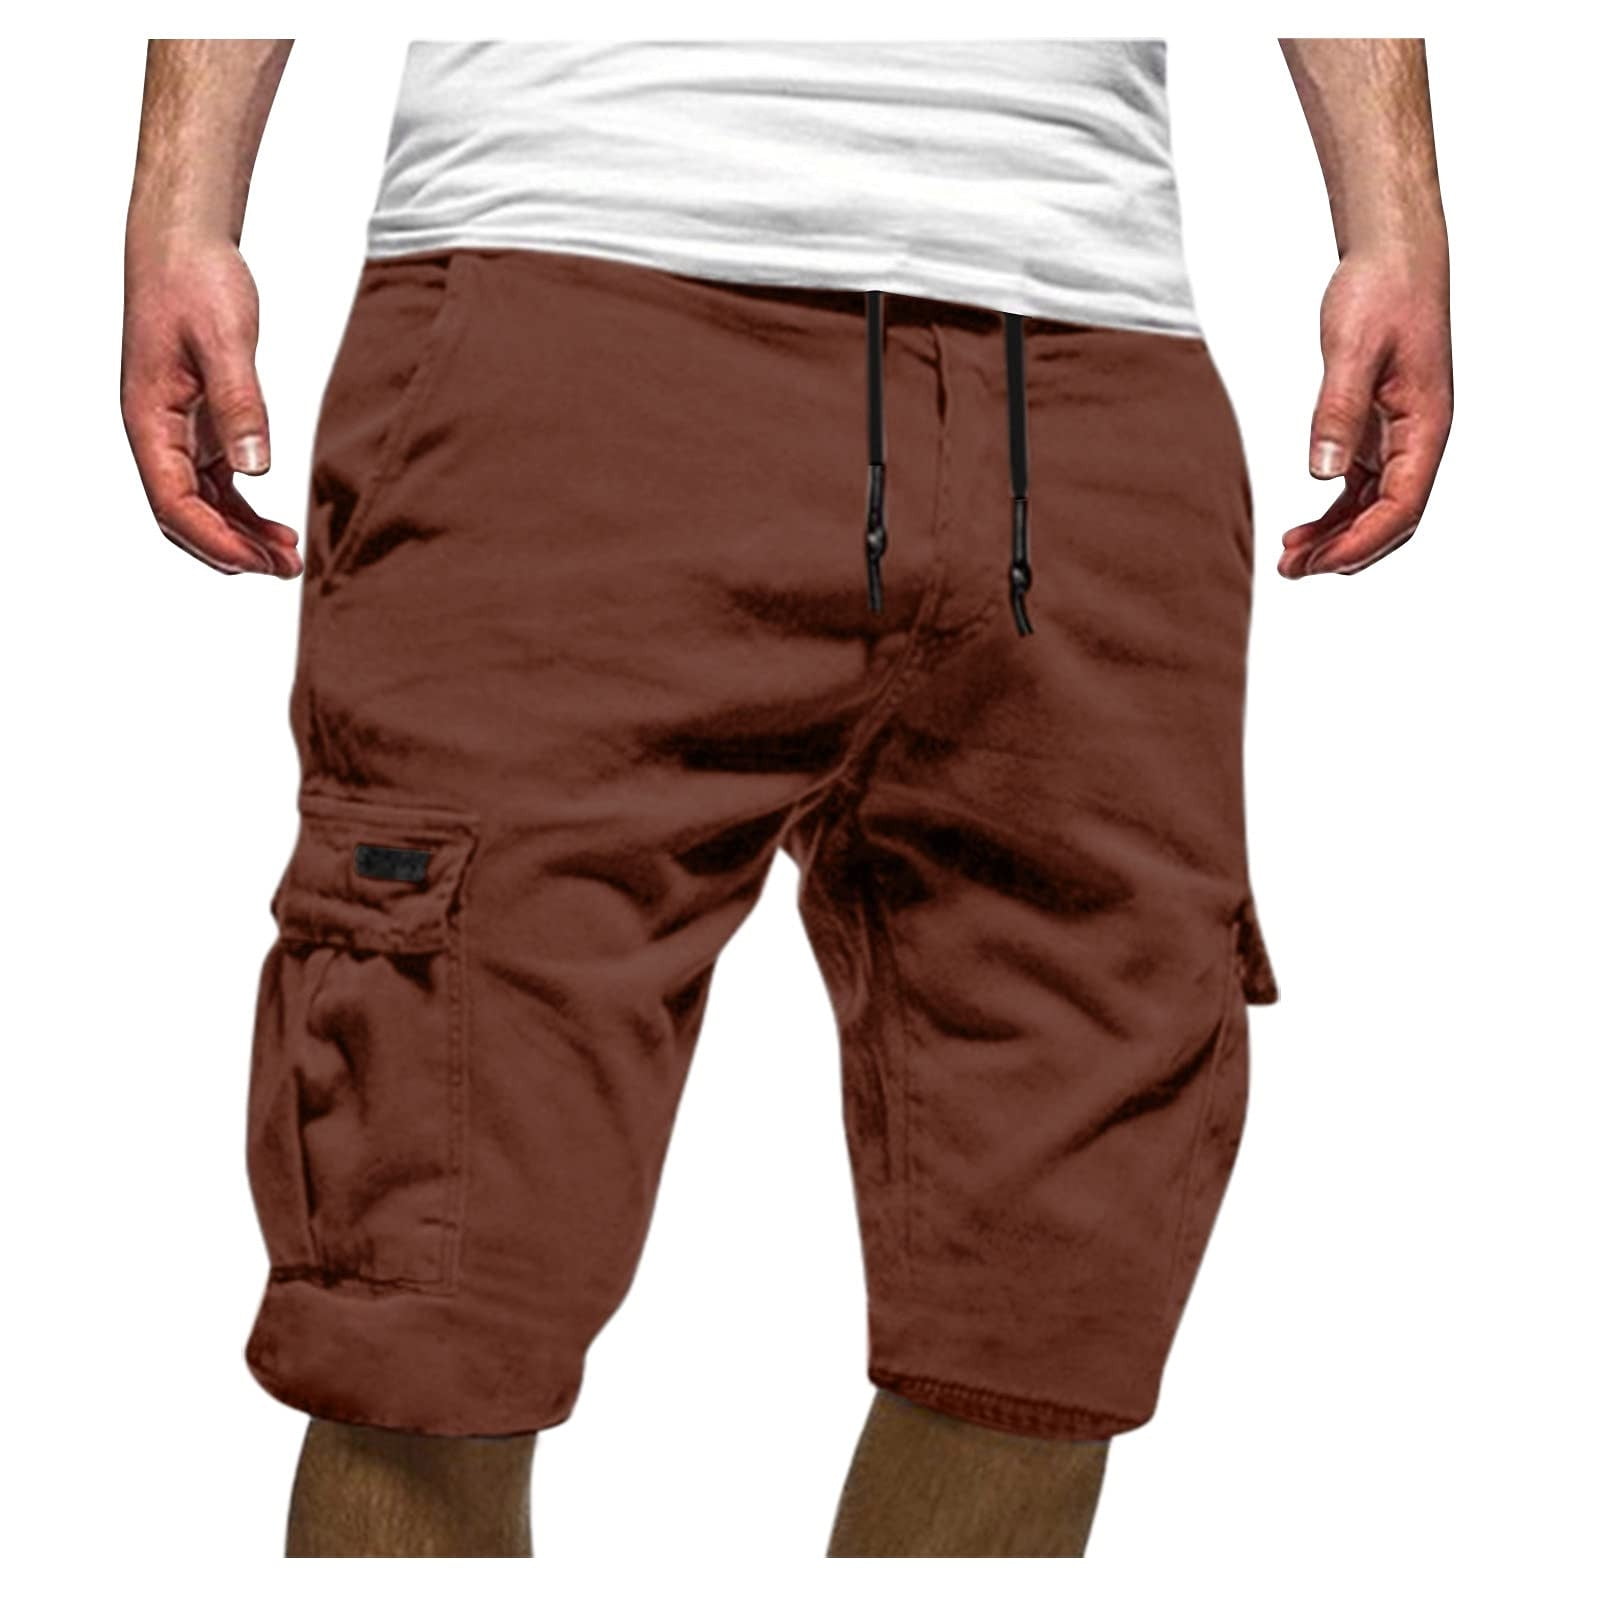 amidoa Mens Shorts 11 Inch Inseam Regular and Big & Tall Cargo Shorts  Multi-Pockets Summer Drawstring Walk Dungarees